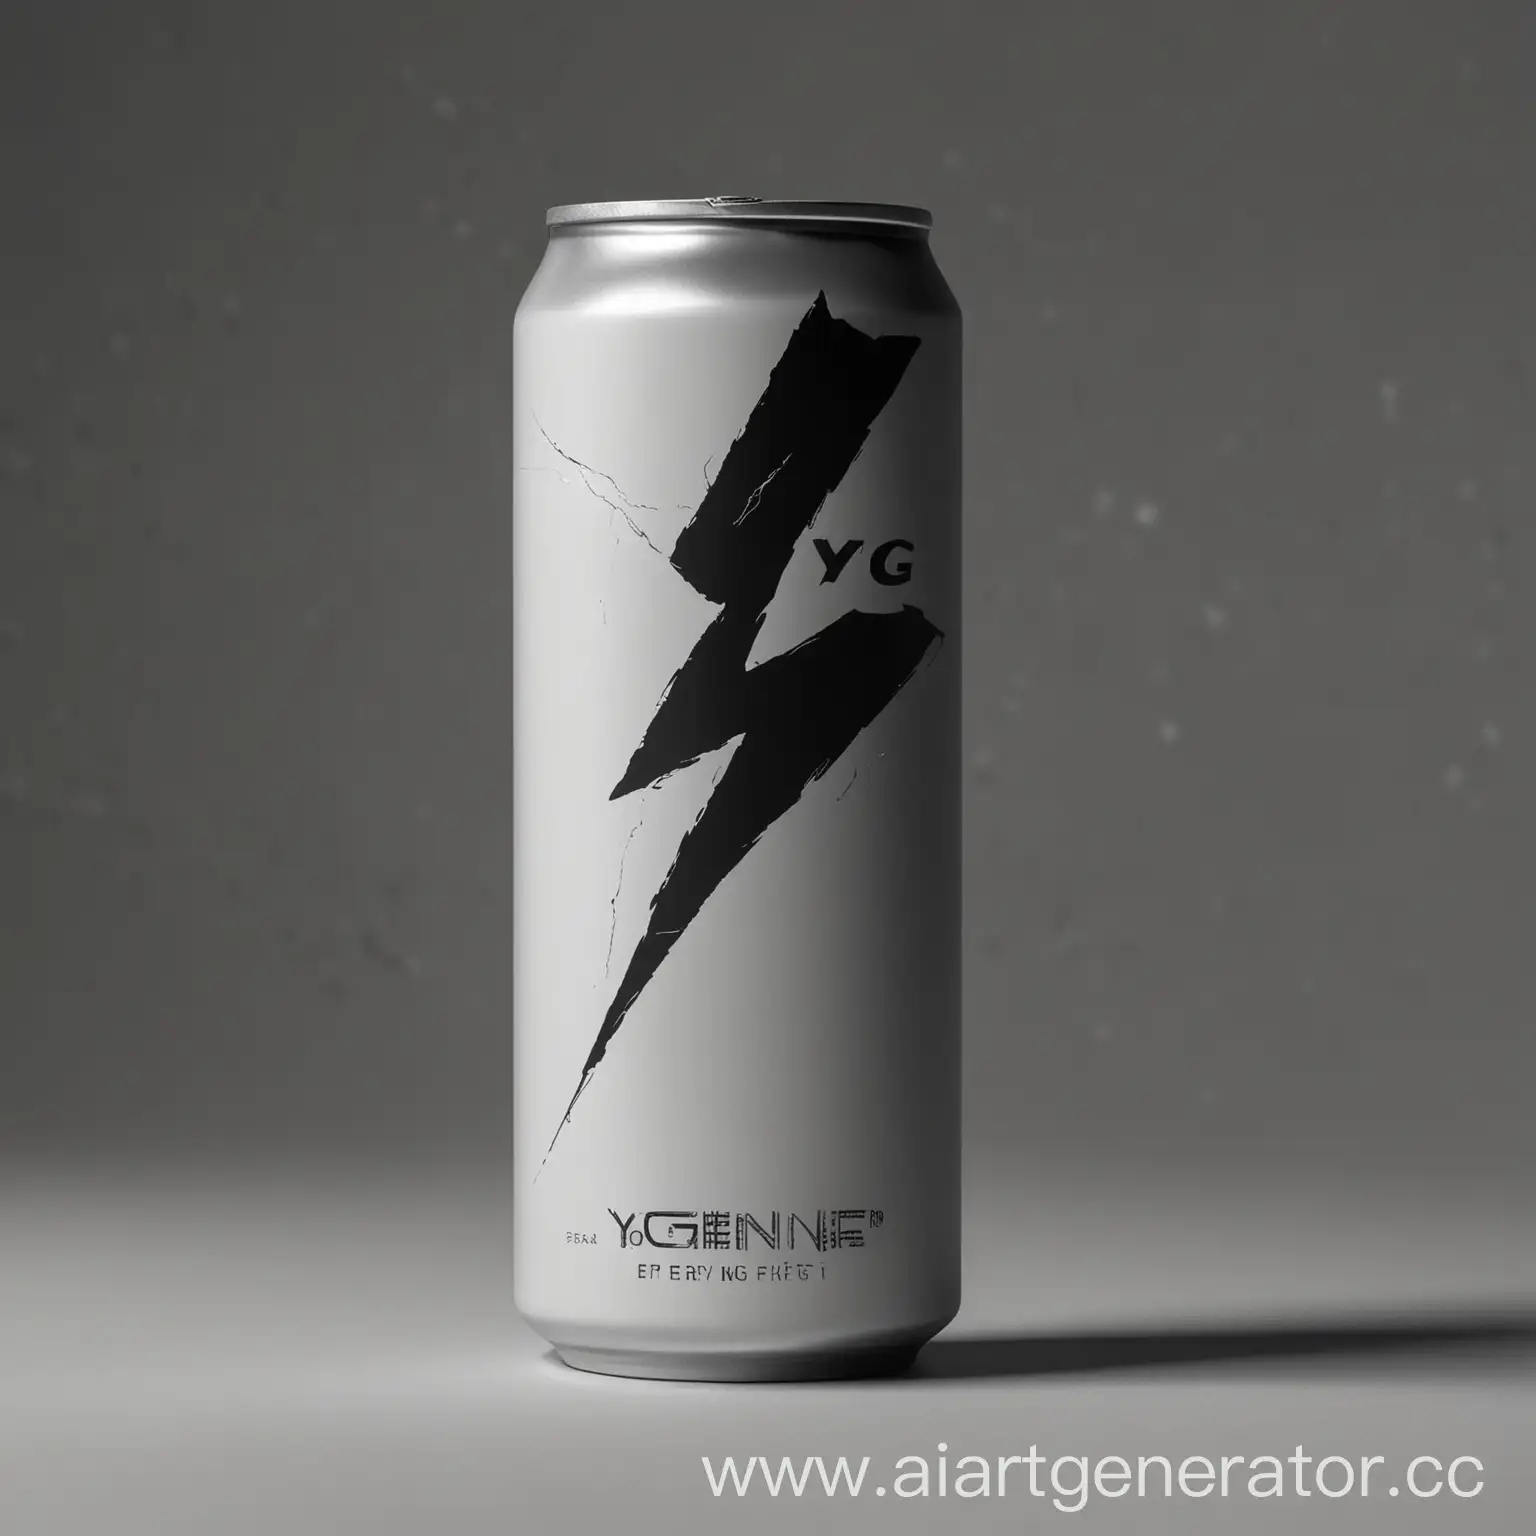 Представьте себе черную матовую алюминиваю банку. На ней выделяется крупным белым шрифтом “YG Energy”, под ним - стилизованный логотип YG Entertainment, напоминающий молнию. Внизу - небольшой текст с информацией о составе. В целом, дизайн простой, но запоминающийся, передающий мощную энергию и связь с брендом YG.